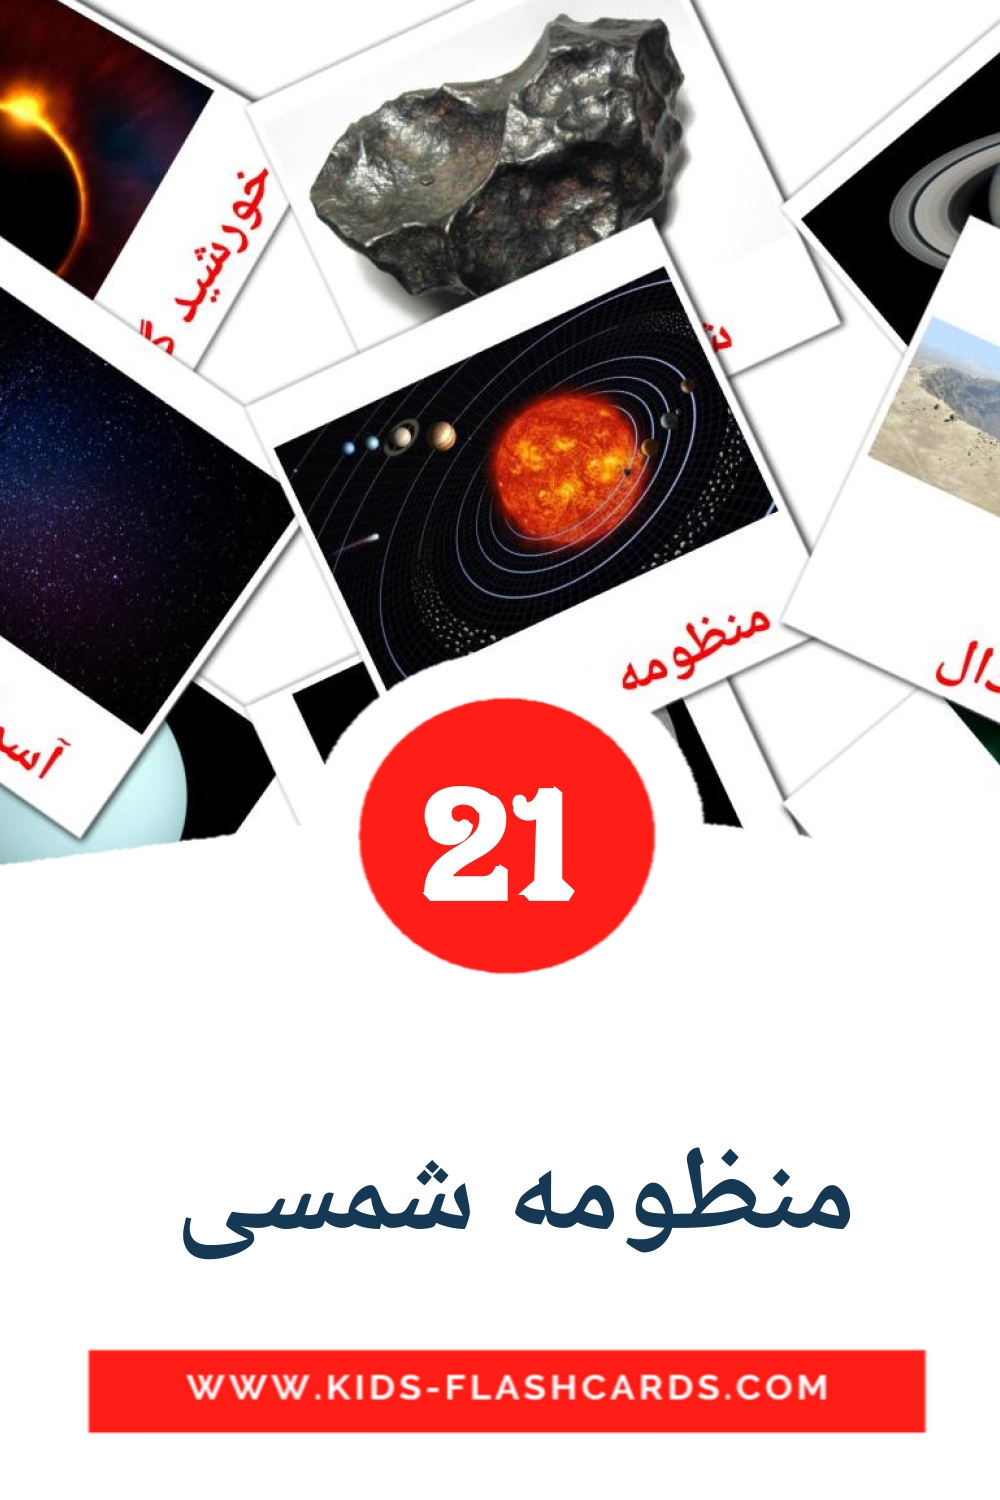 21 tarjetas didacticas de منظومه شمسی  para el jardín de infancia en persa